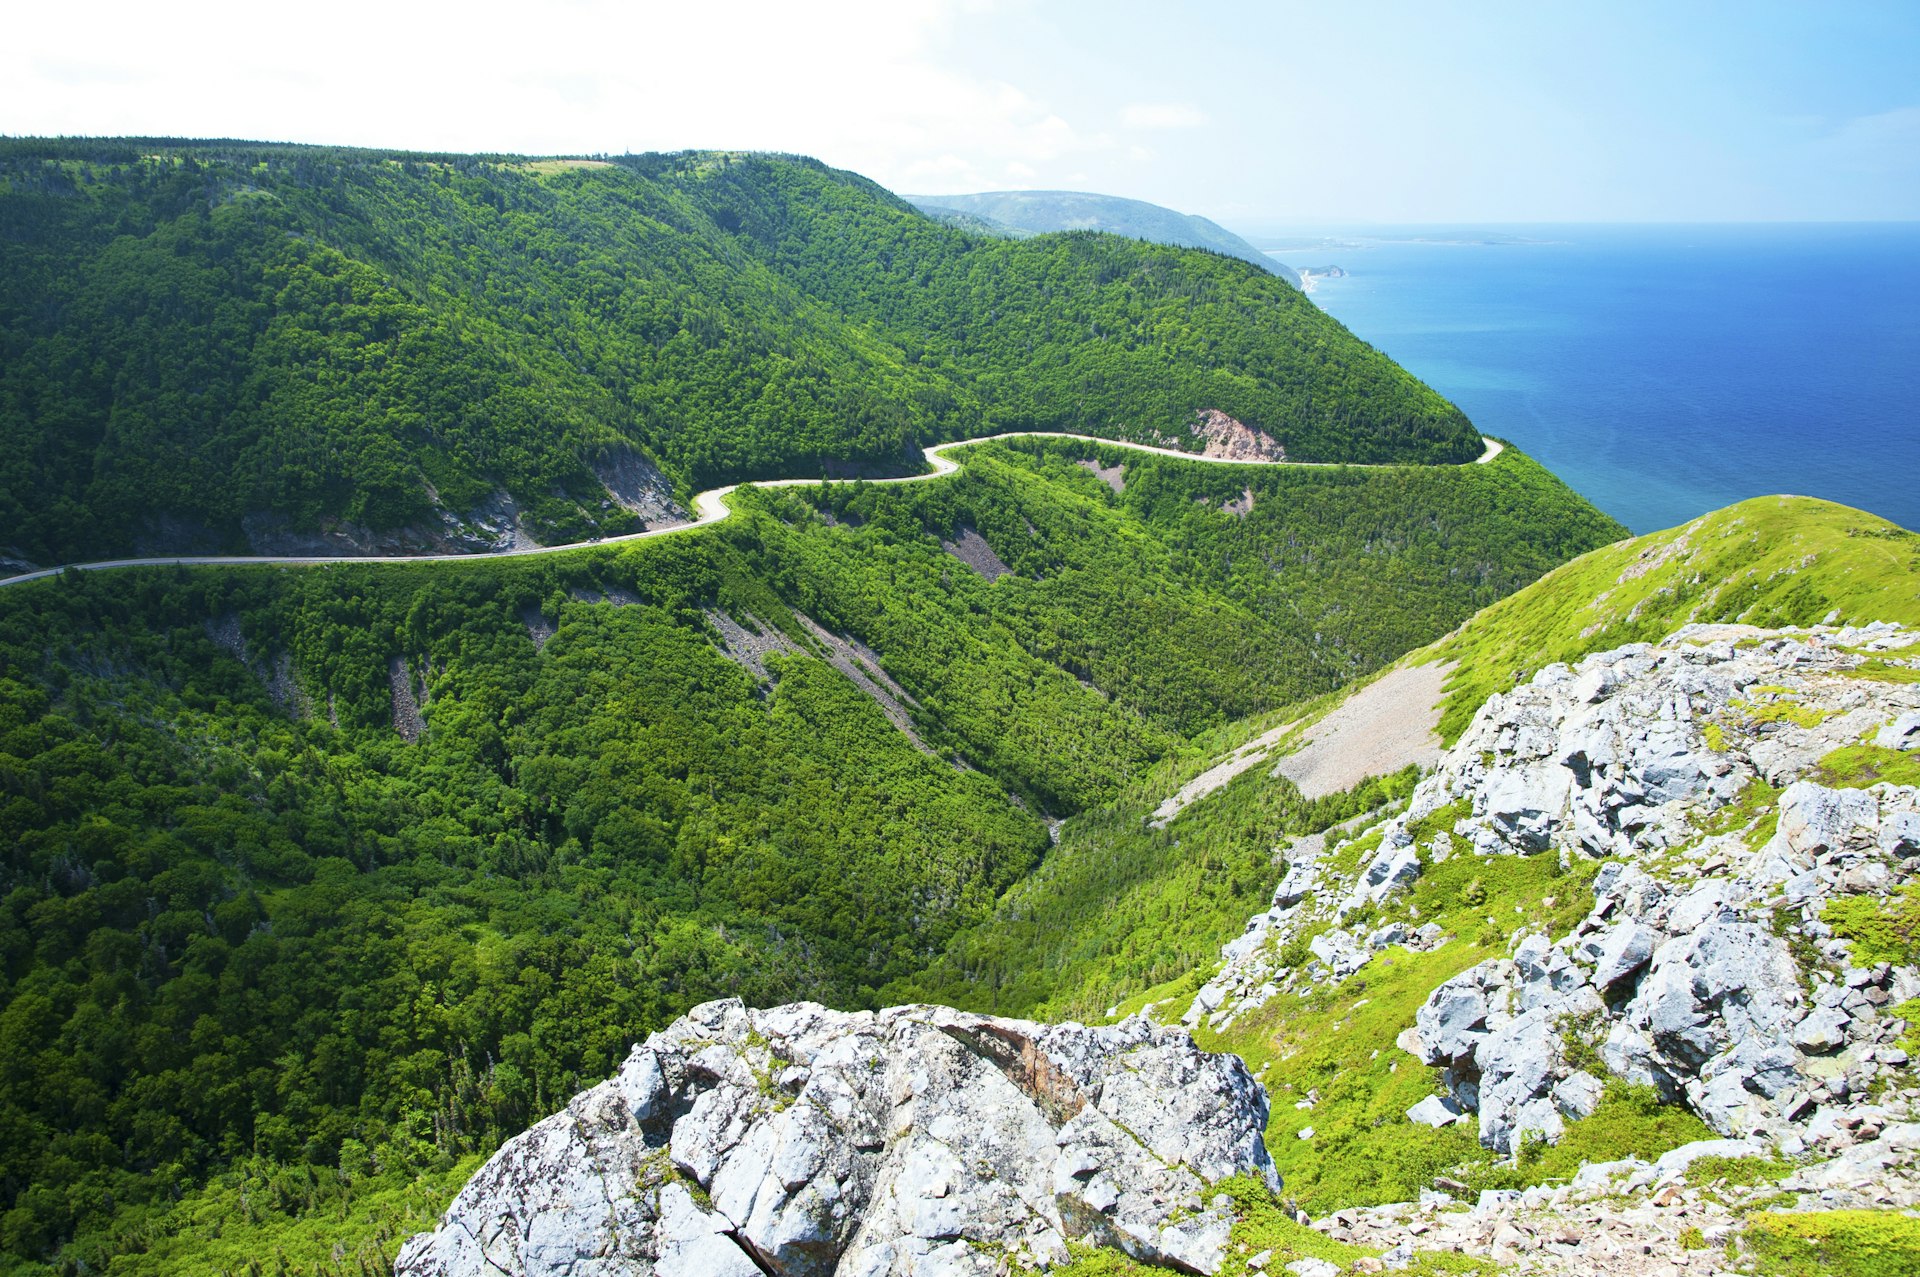 Uma estrada serpenteia pelas colinas que abraçam o litoral